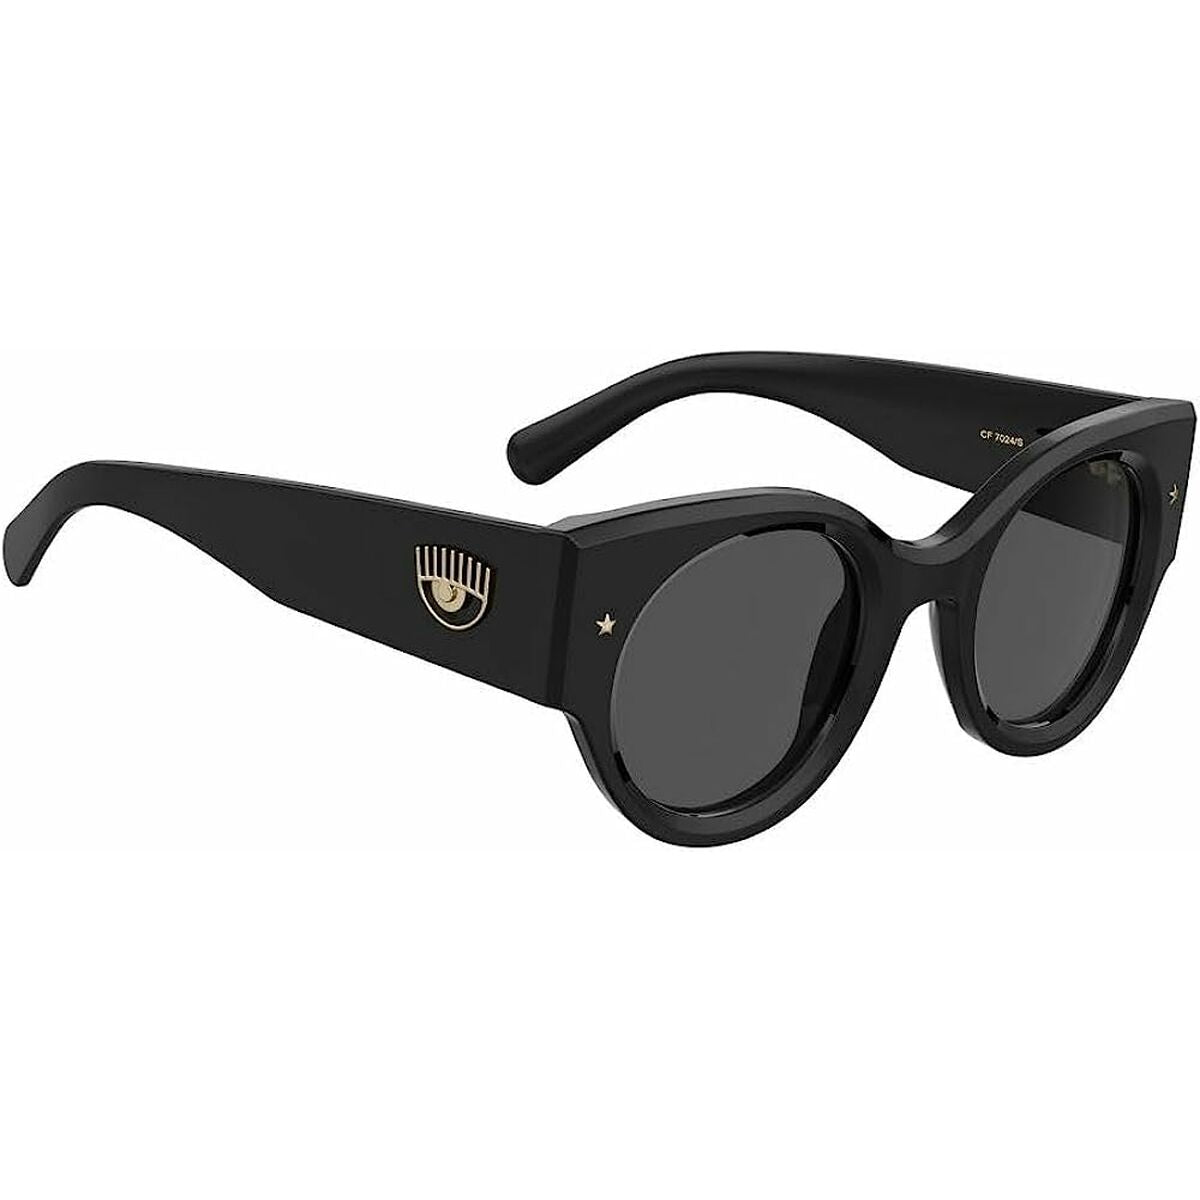 Ladies' Sunglasses Chiara Ferragni CF 7024_S